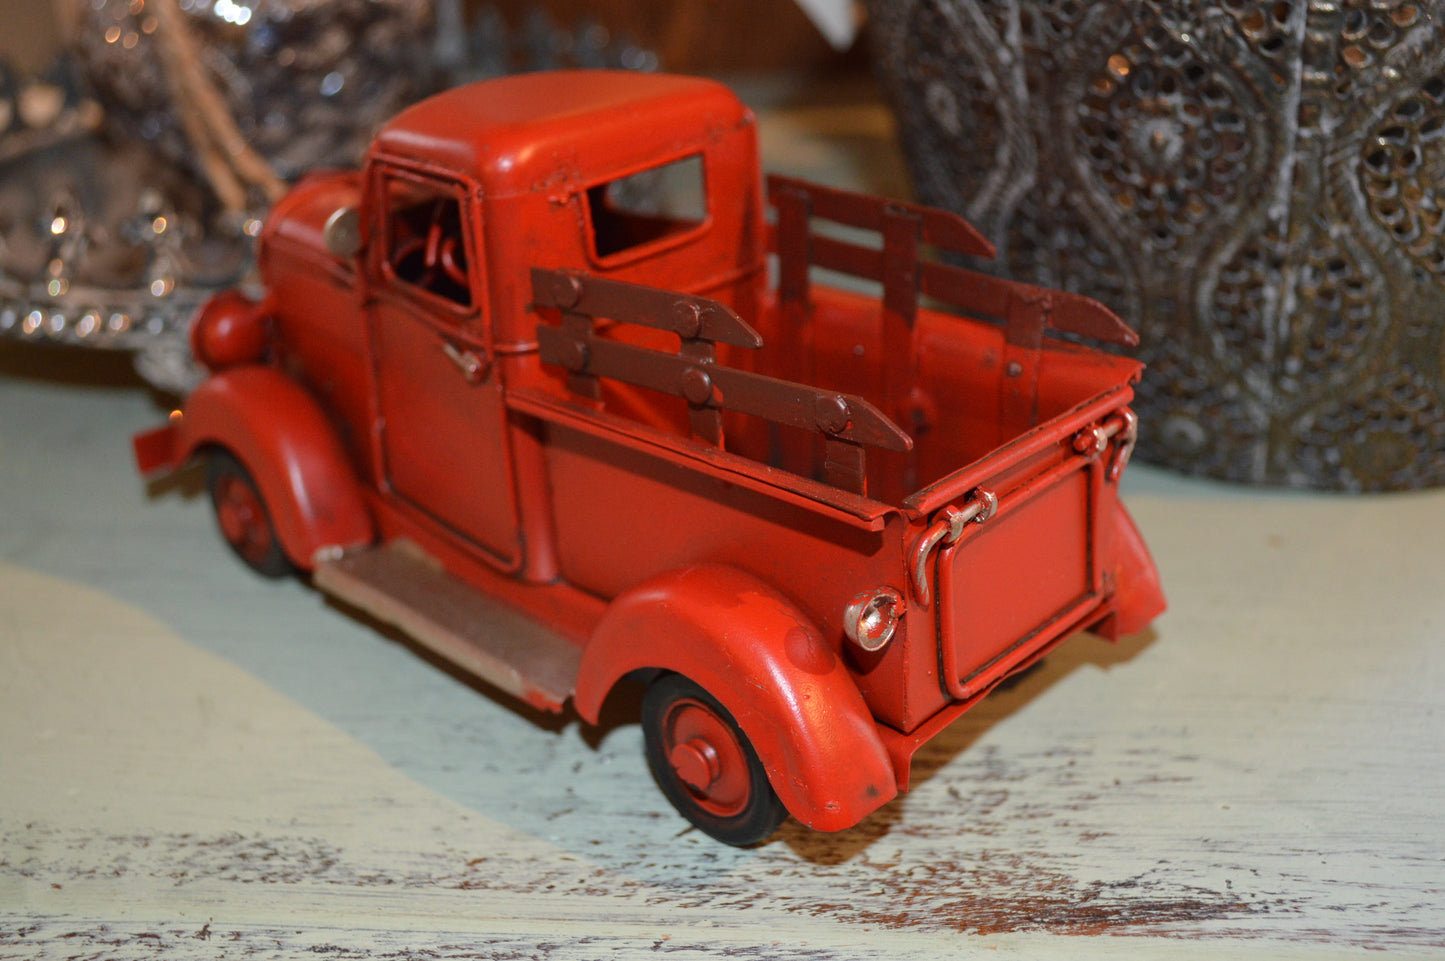 Gammaldags Pickup bilmodell som vill flytta in i ditt hem. "Old school"-modell tillverkad i metall. Fina detaljer.  Mått: H 8,5cm   B 7,5cm   L 16,5cm  Material: Metall/Plåt